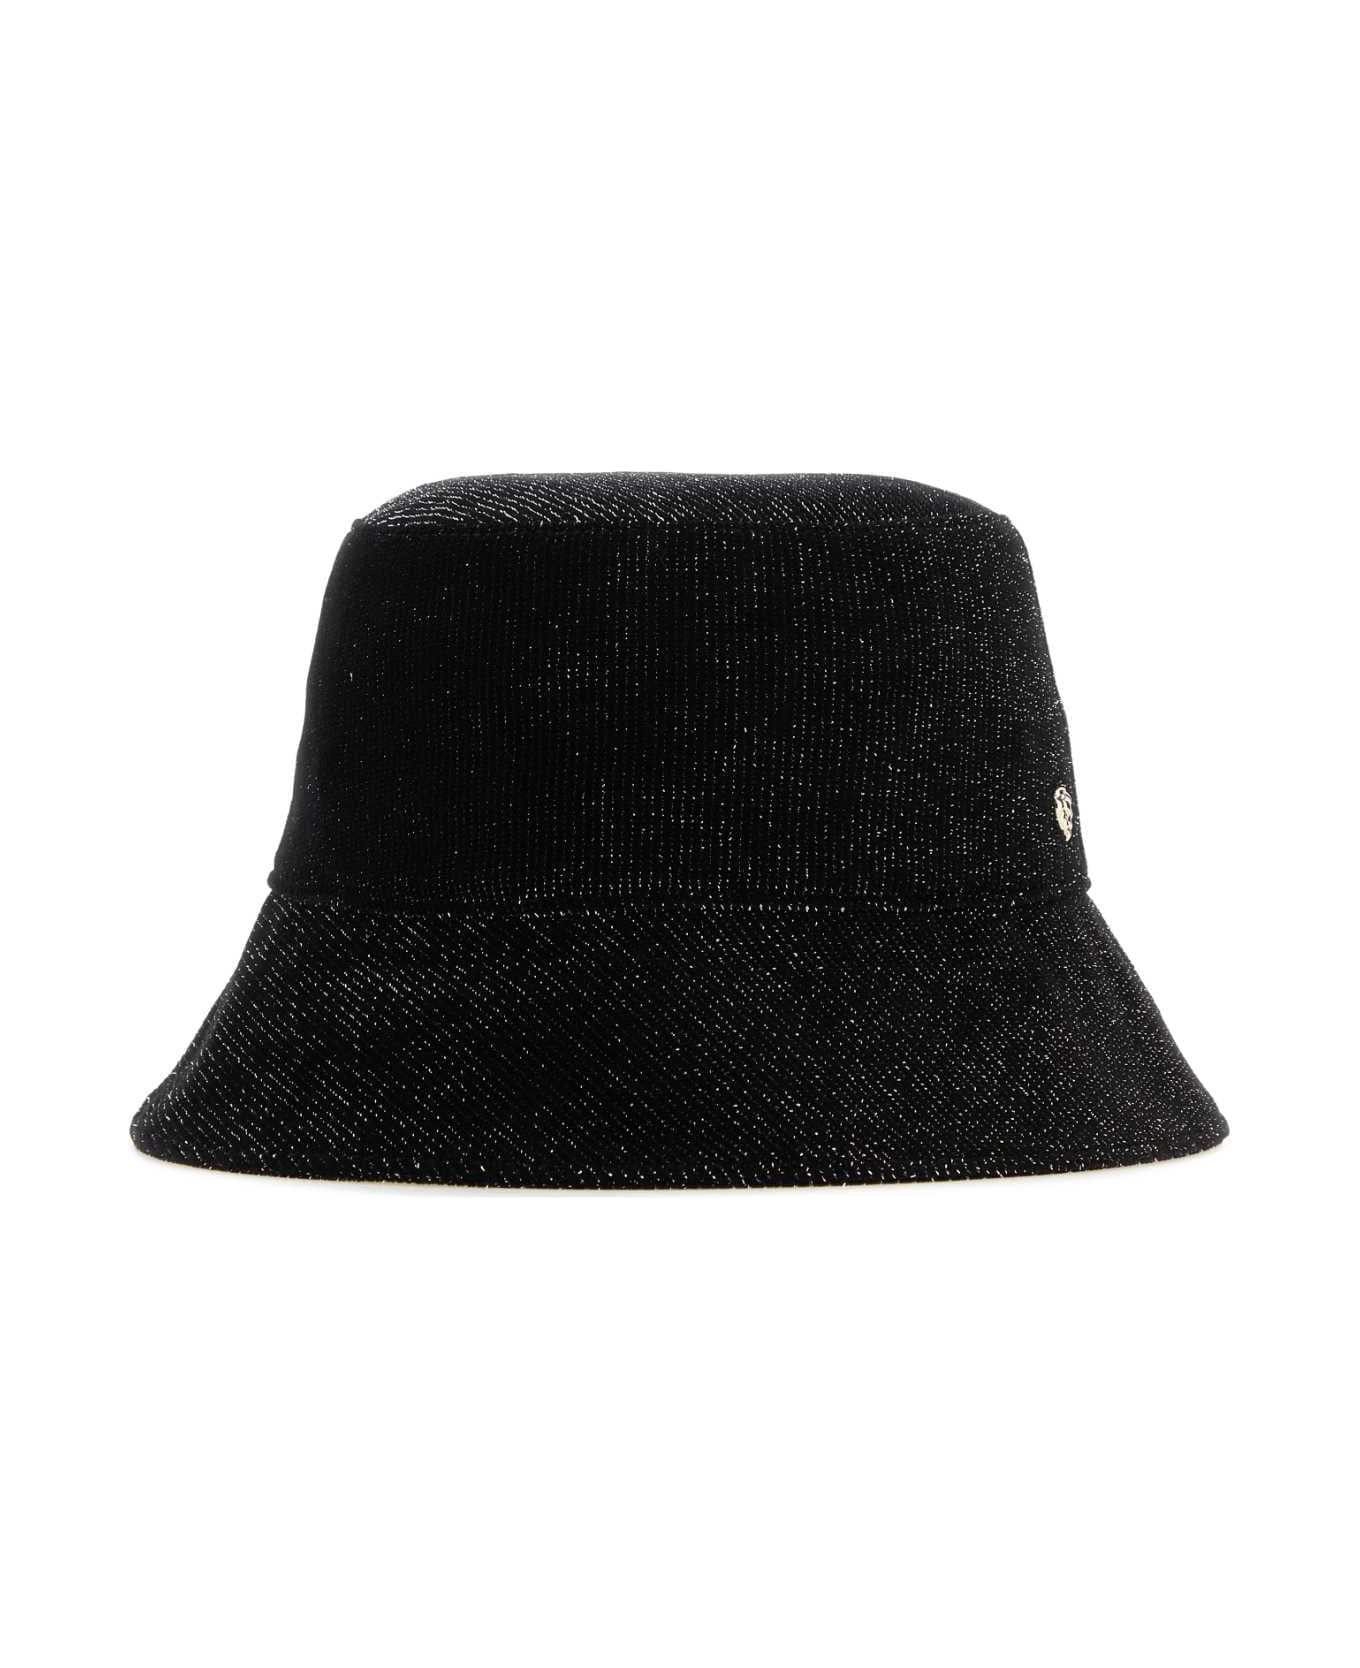 Helen Kaminski Black Velvet Florenze Bucket Hat - BLACKSPARKLE ヘアアクセサリー